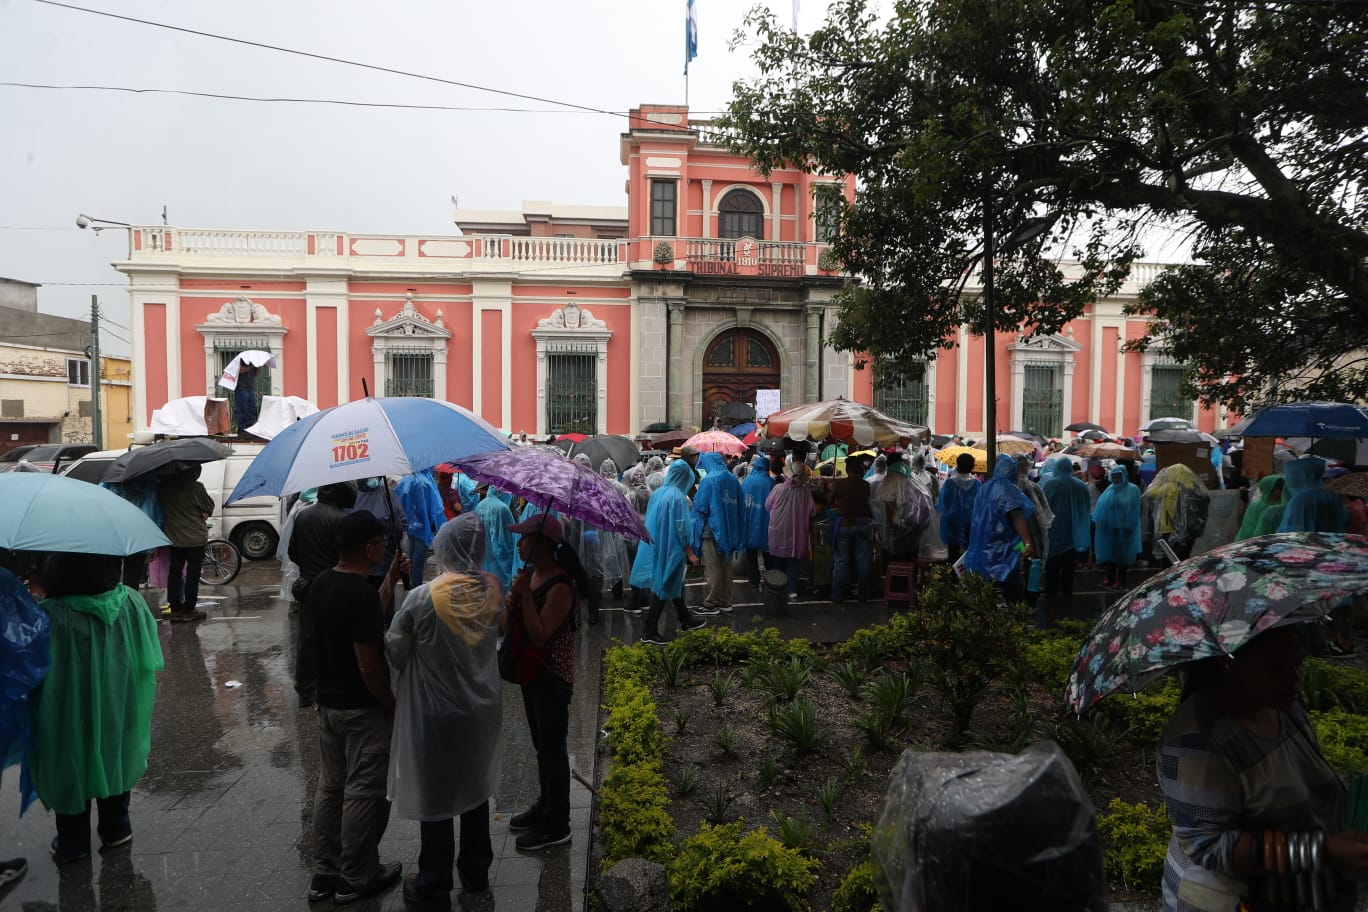 La incertidumbre por la falta de resultados electorales en Guatemala ha causado manifestaciones. (Foto Prensa Libre: Esbin García)